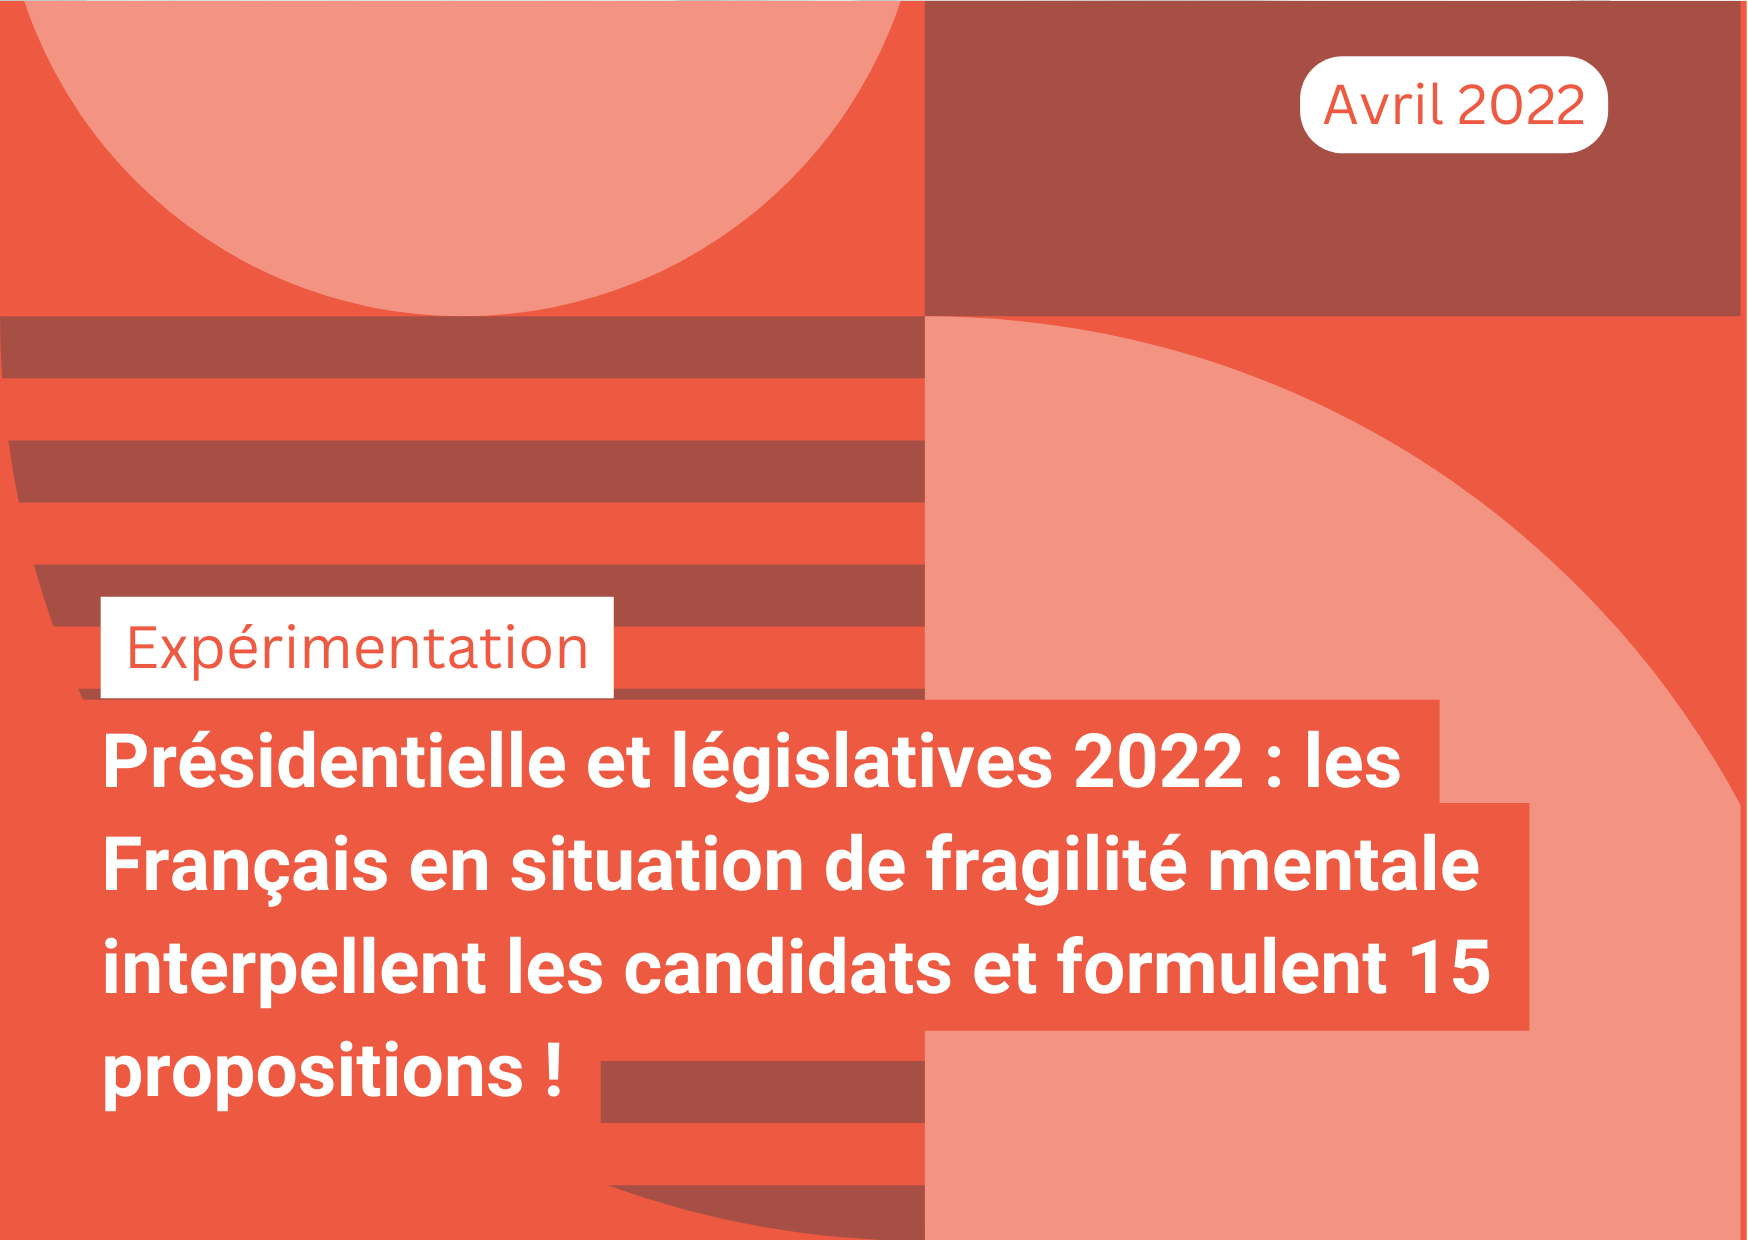 Présidentielle et législatives 2022 : les Français en situation de fragilité mentale interpellent les candidats et formulent 15 propositions !